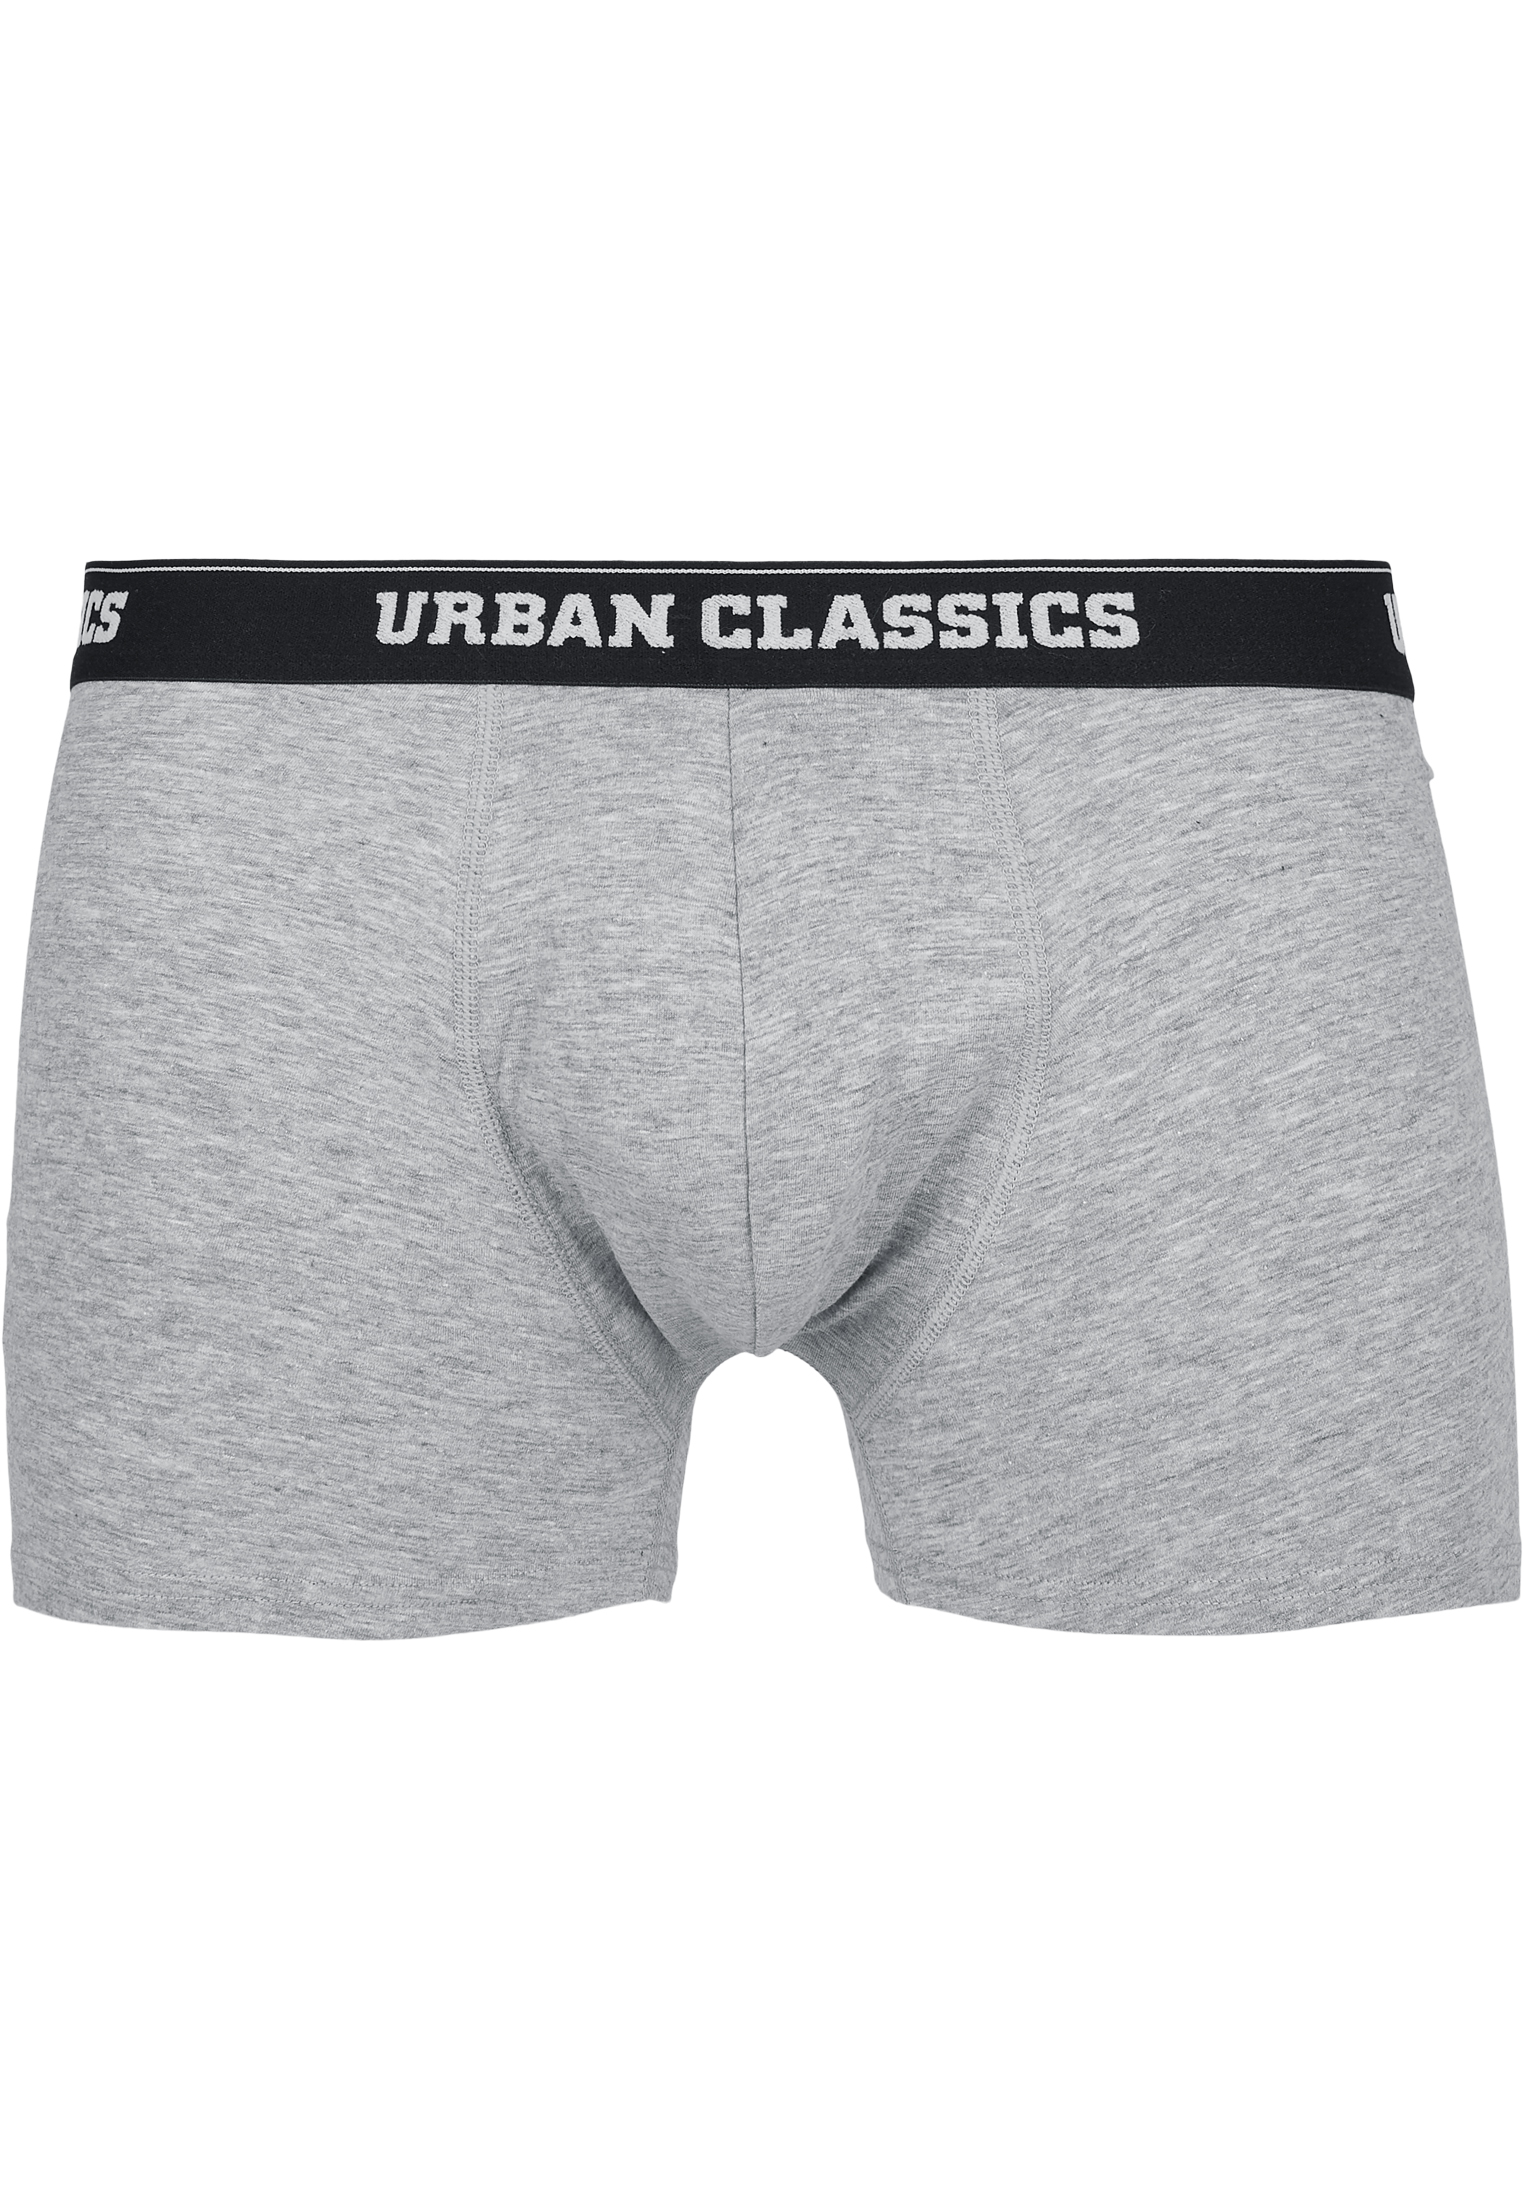 Underwear Men Boxer Shorts Double Pack in Farbe darkgreen+grey